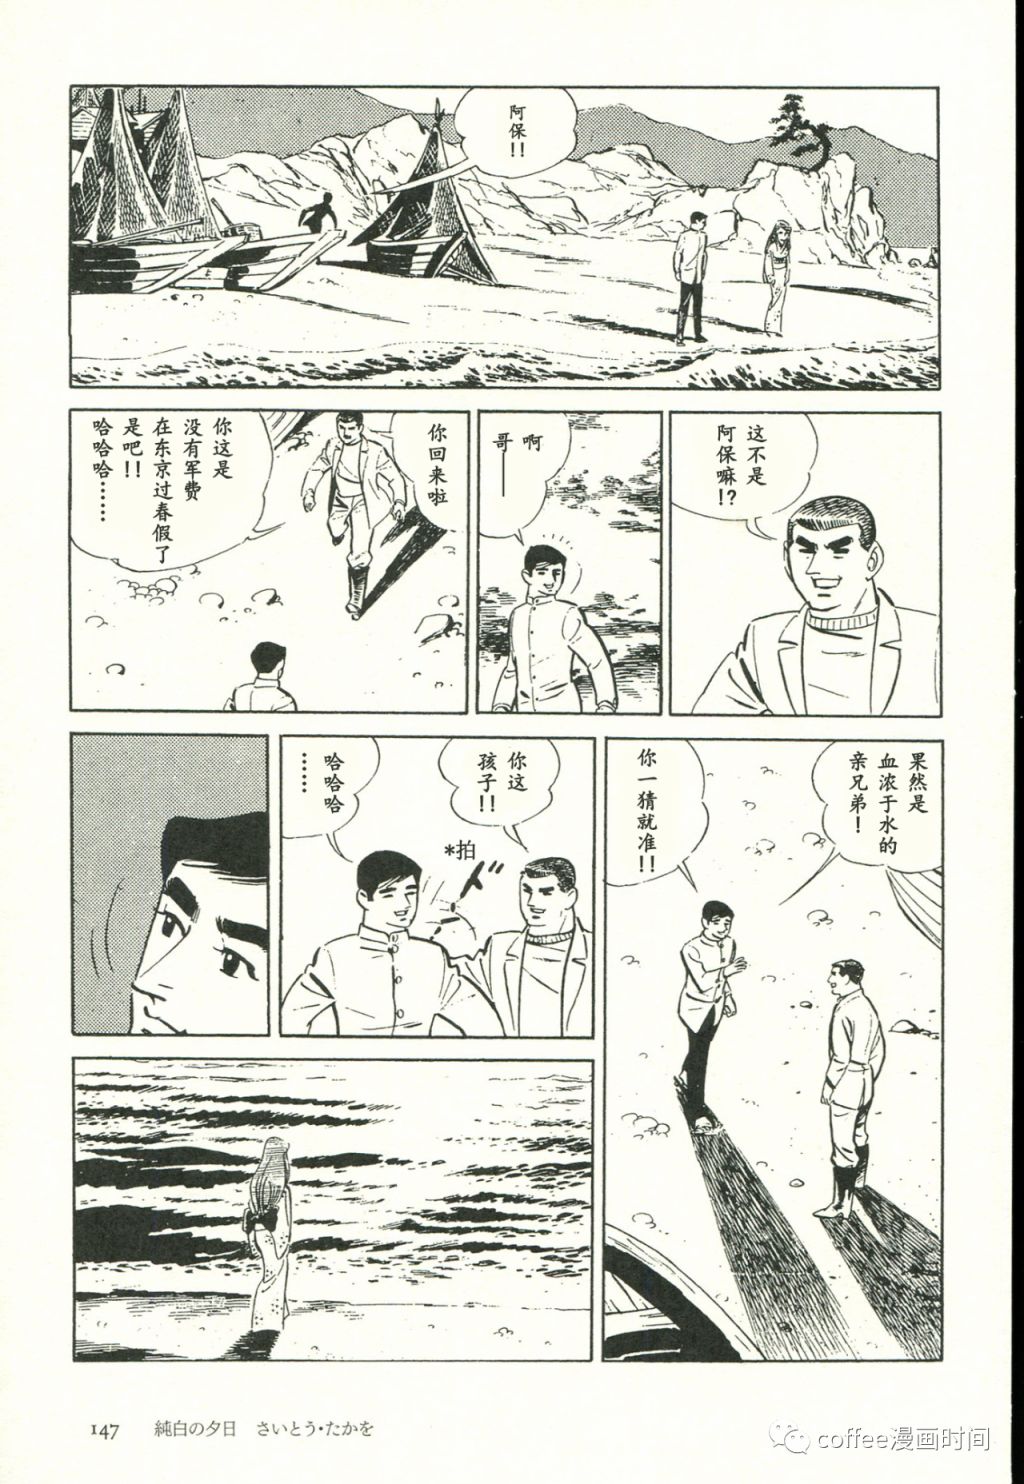 日本短篇漫畫傑作集 - 齋藤隆夫《純白的夕陽》 - 2